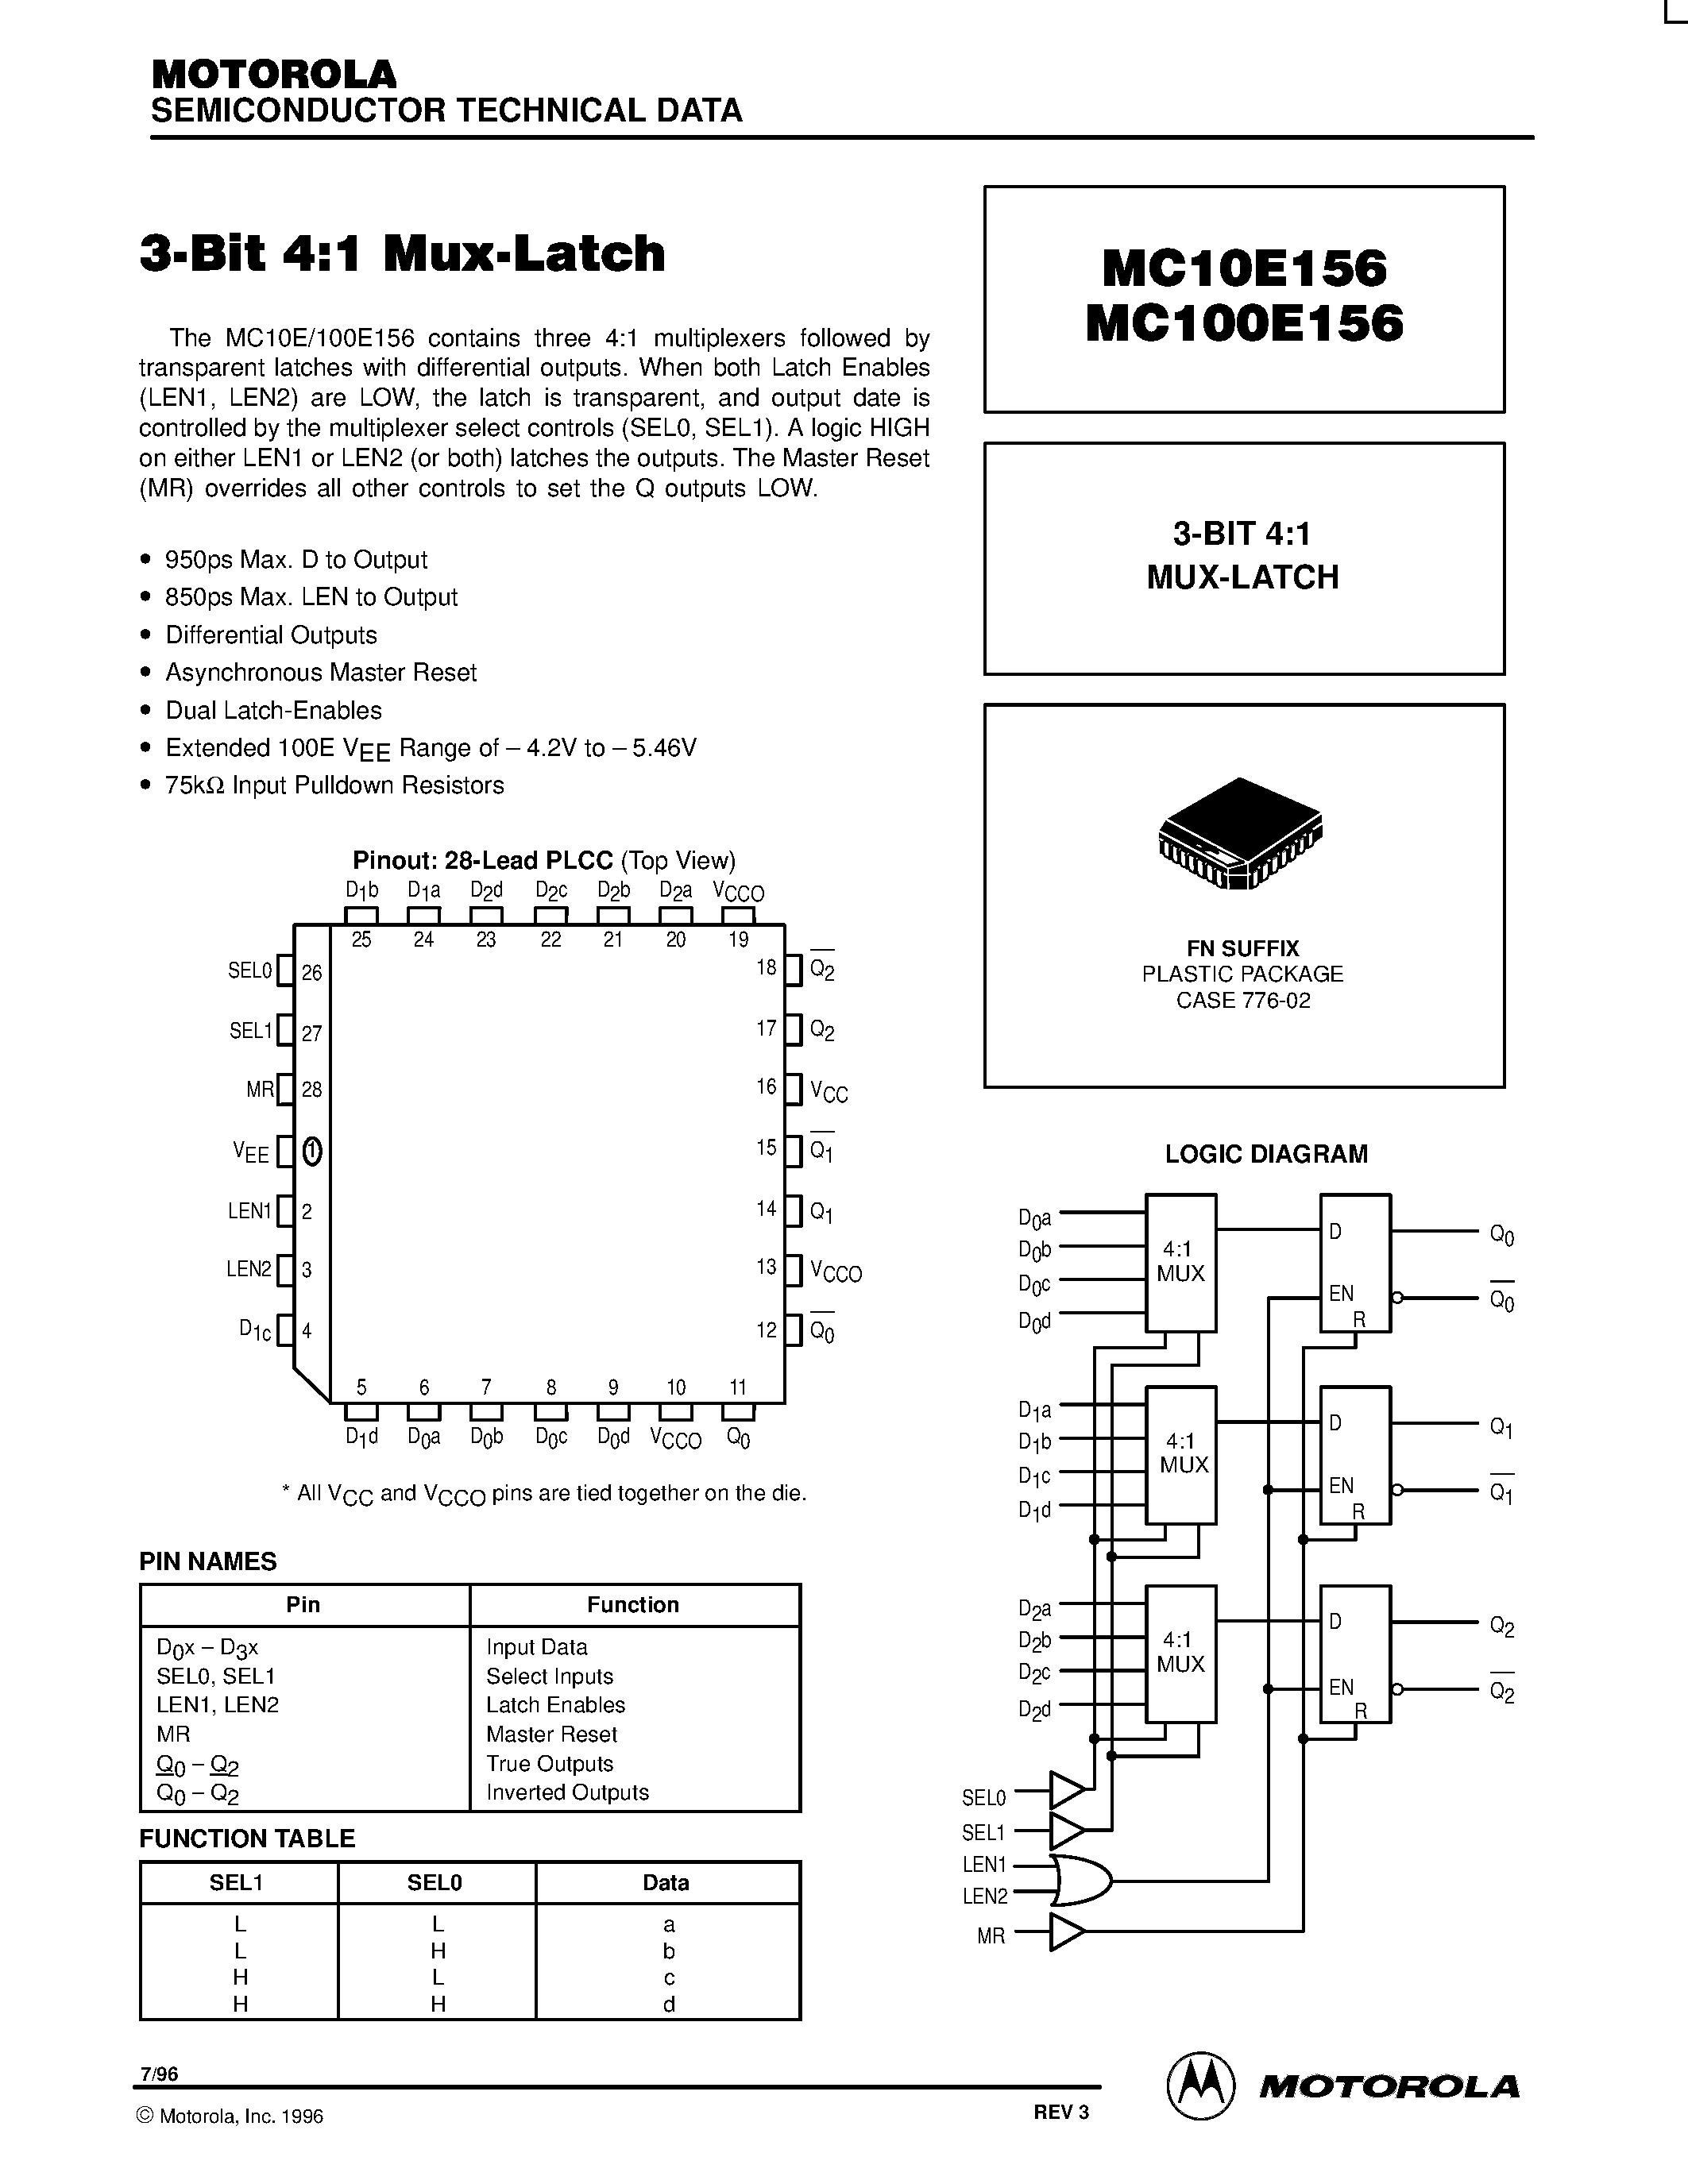 Datasheet MC100E156FN - 3-BIT 4:1 MUX-LATCH page 1